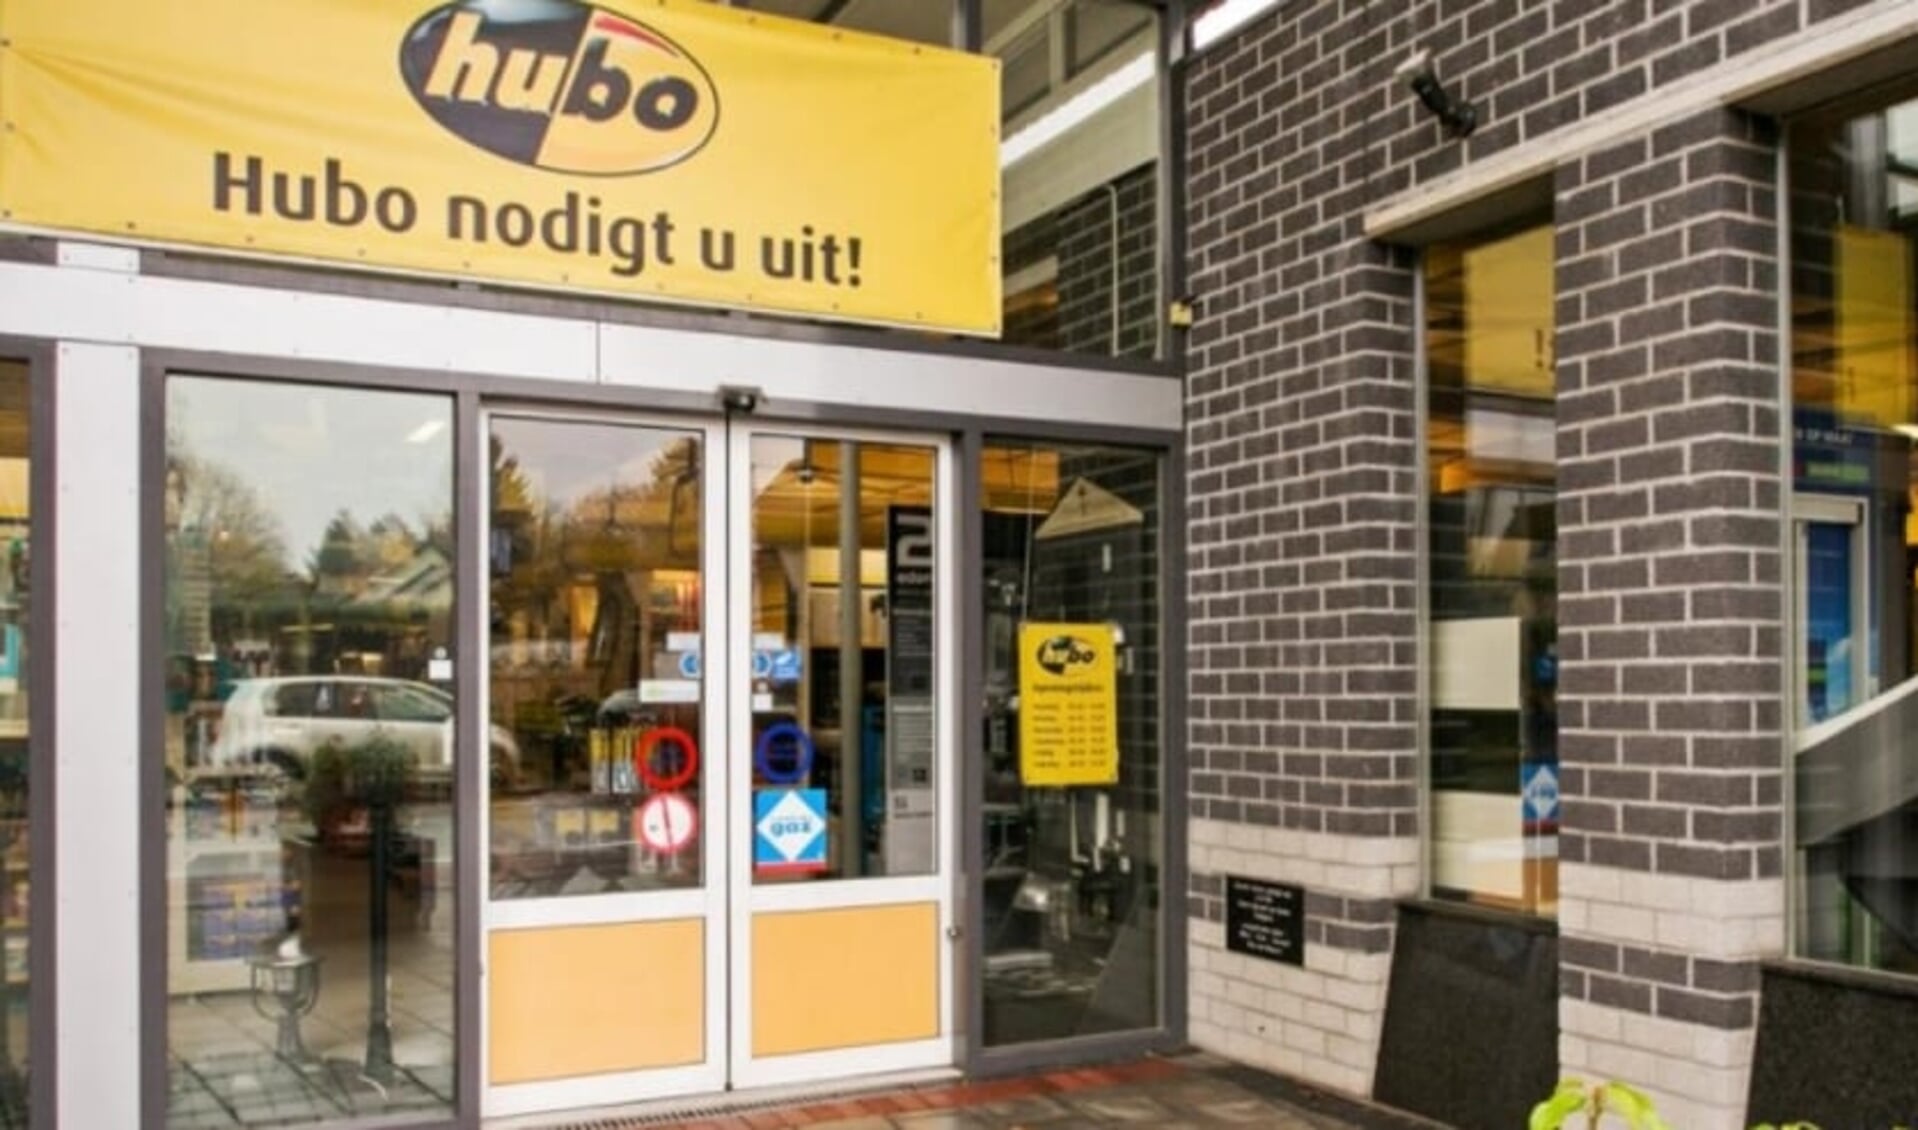 De nieuwe kringloopwinkel komt in het pand van bouwmarkt Hubo in Brummen.